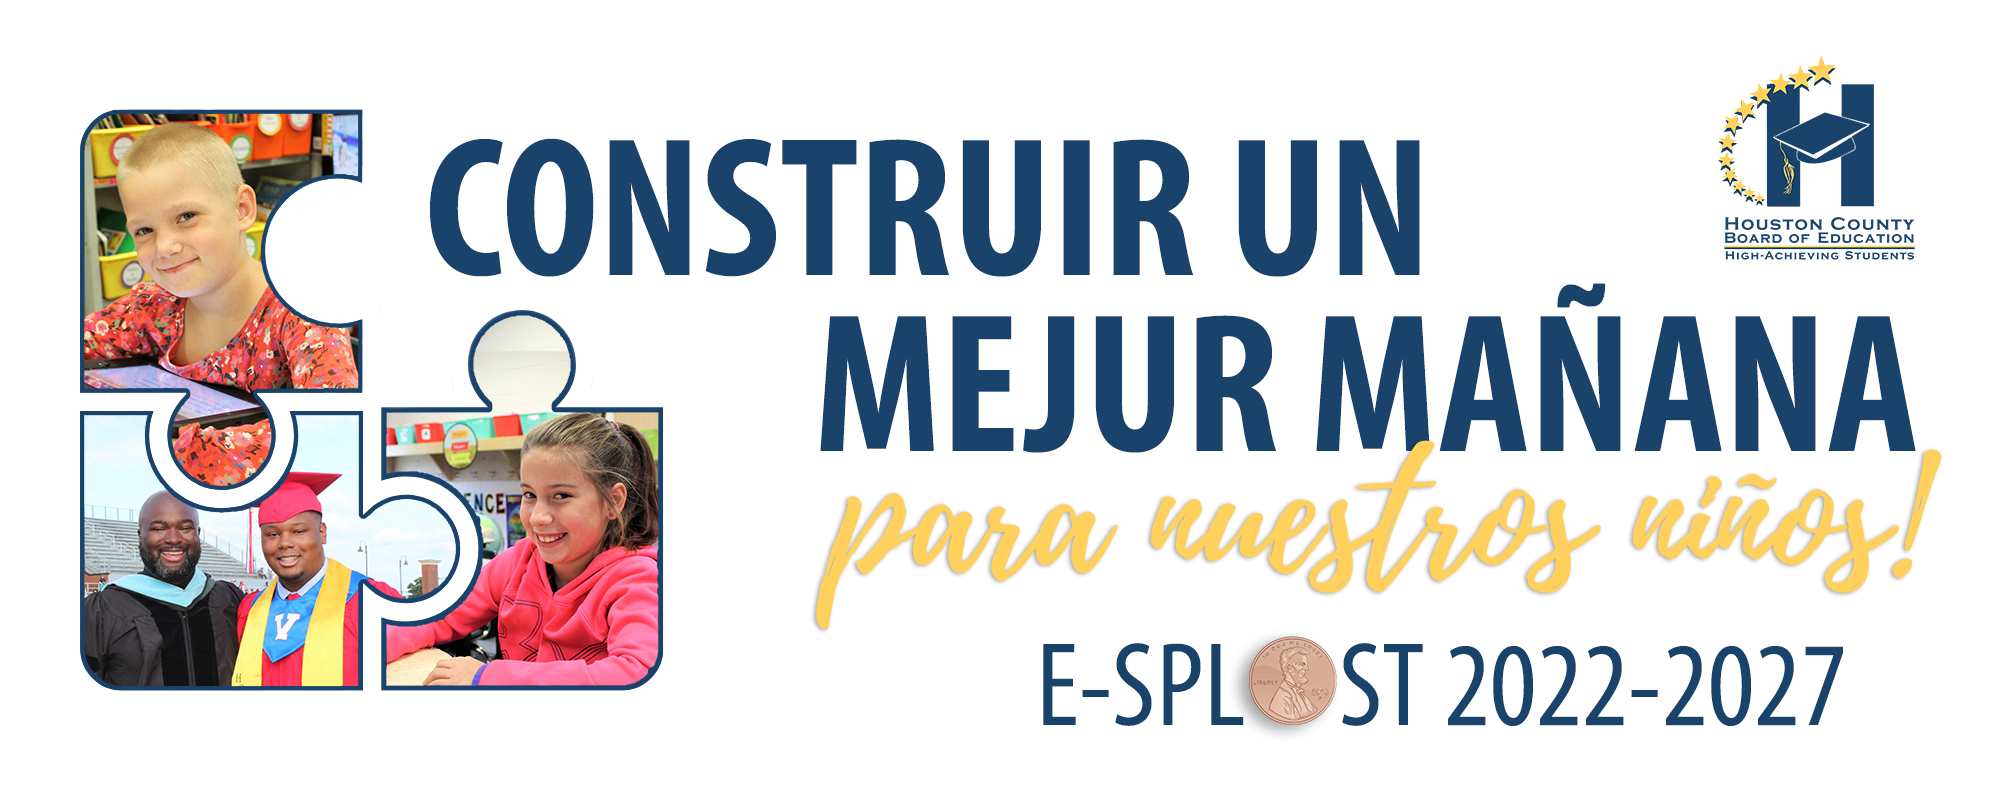 E-SPLOST Logo in Spanish